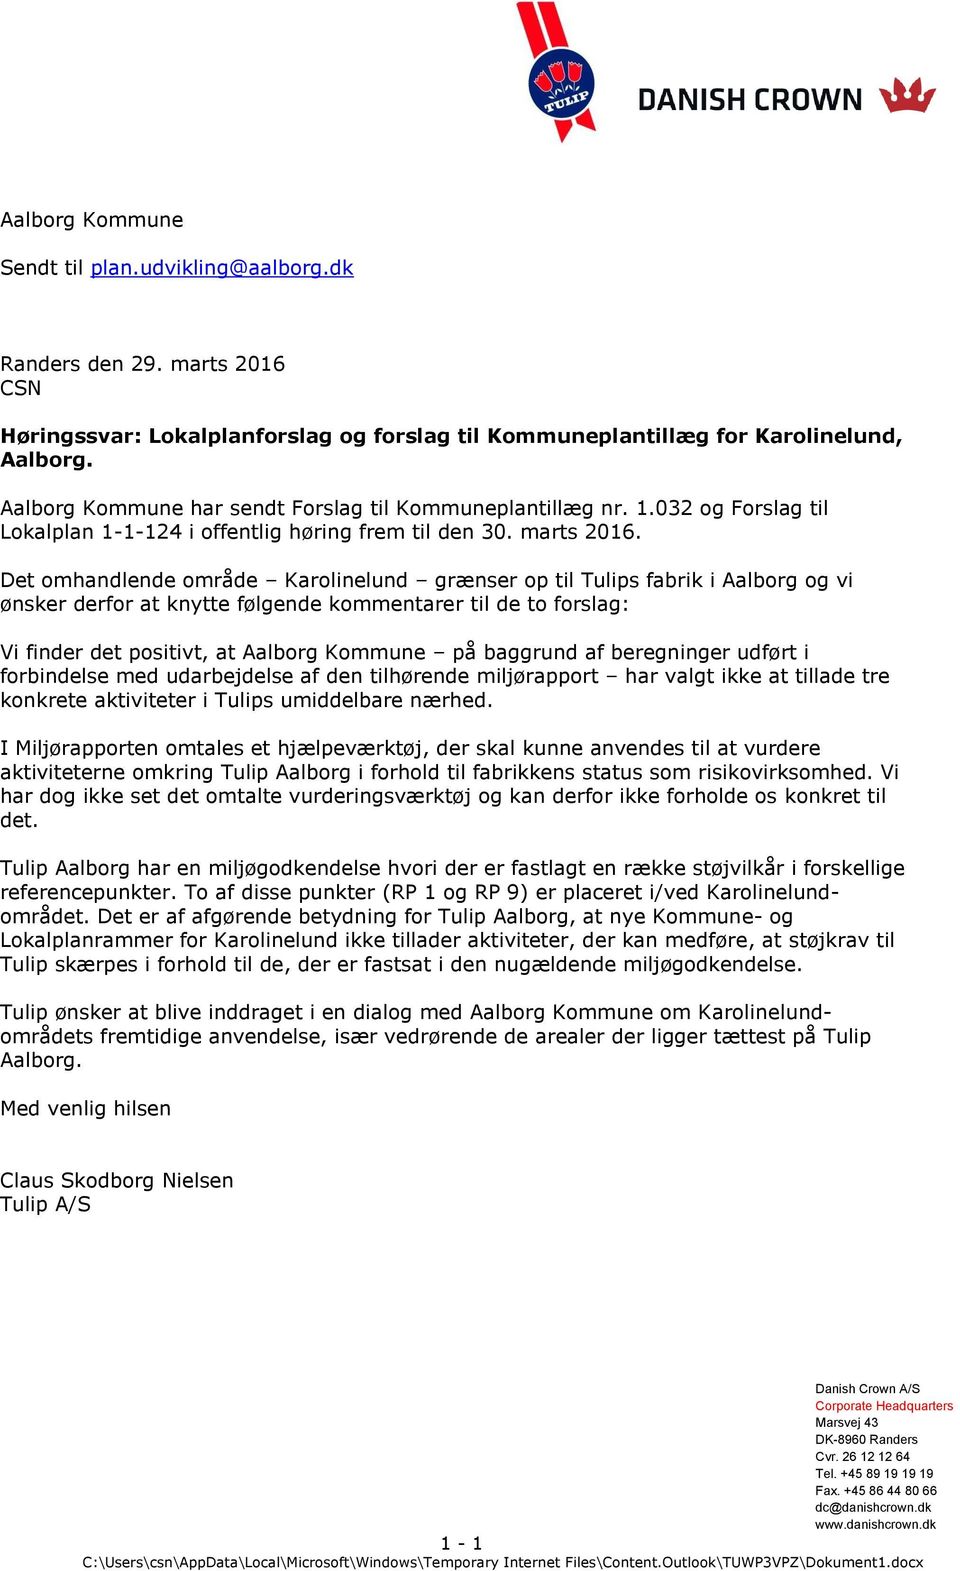 Det omhandlende område Karolinelund grænser op til Tulips fabrik i Aalborg og vi ønsker derfor at knytte følgende kommentarer til de to forslag: Vi finder det positivt, at Aalborg Kommune på baggrund